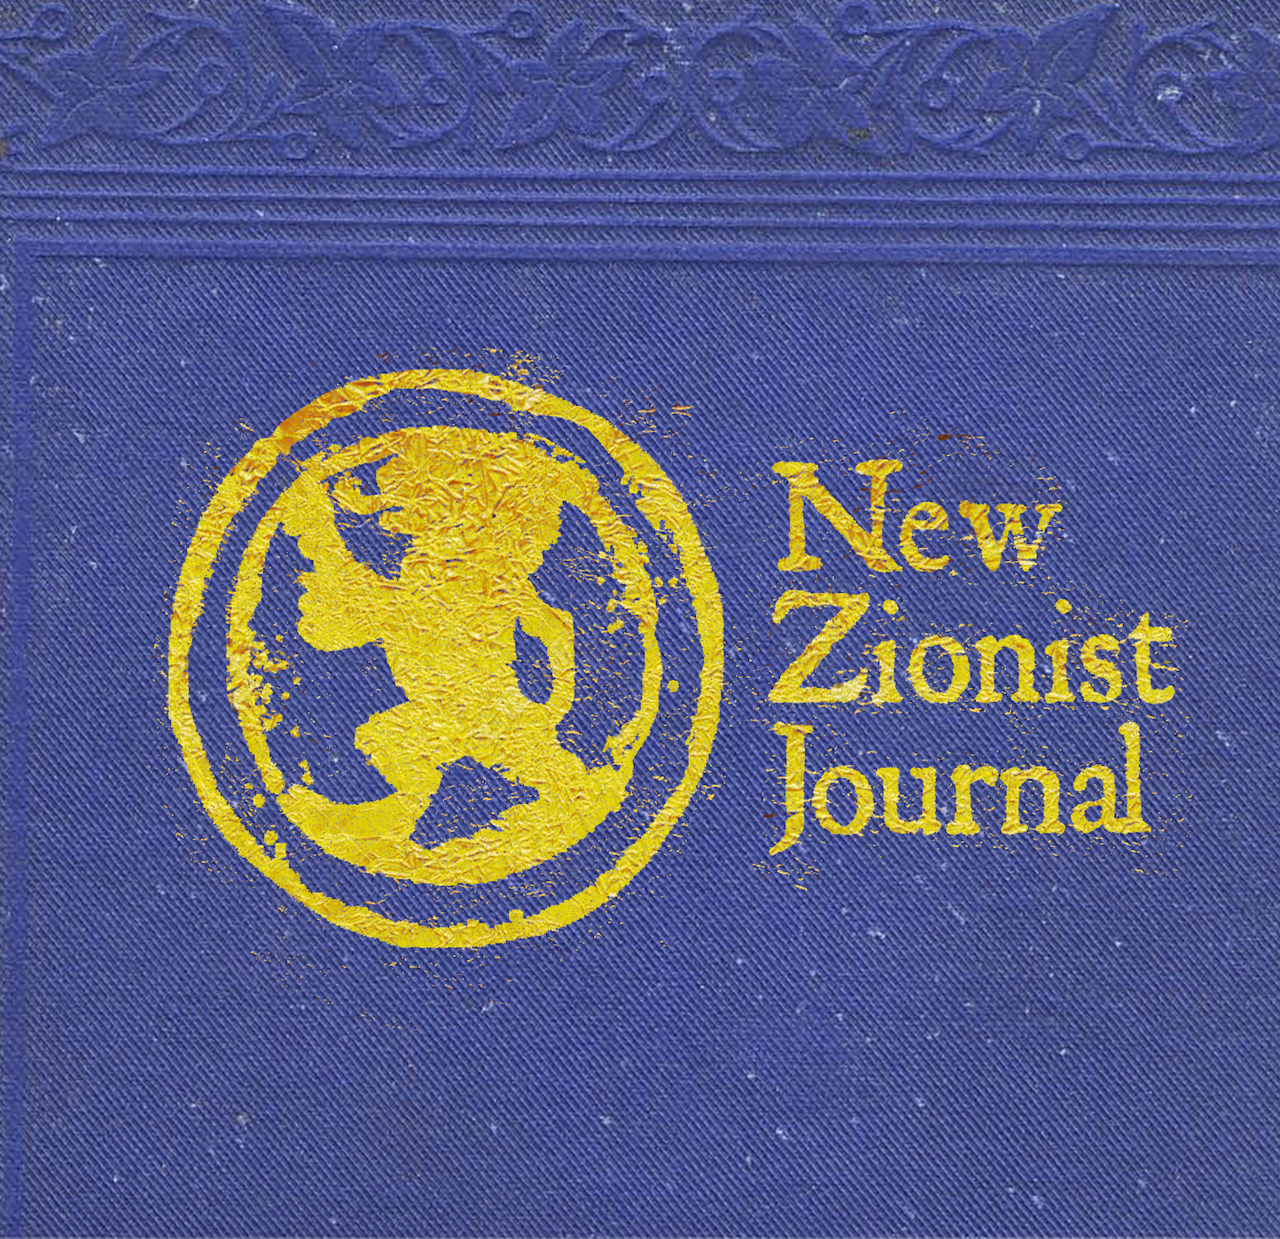 New Zionist Journal